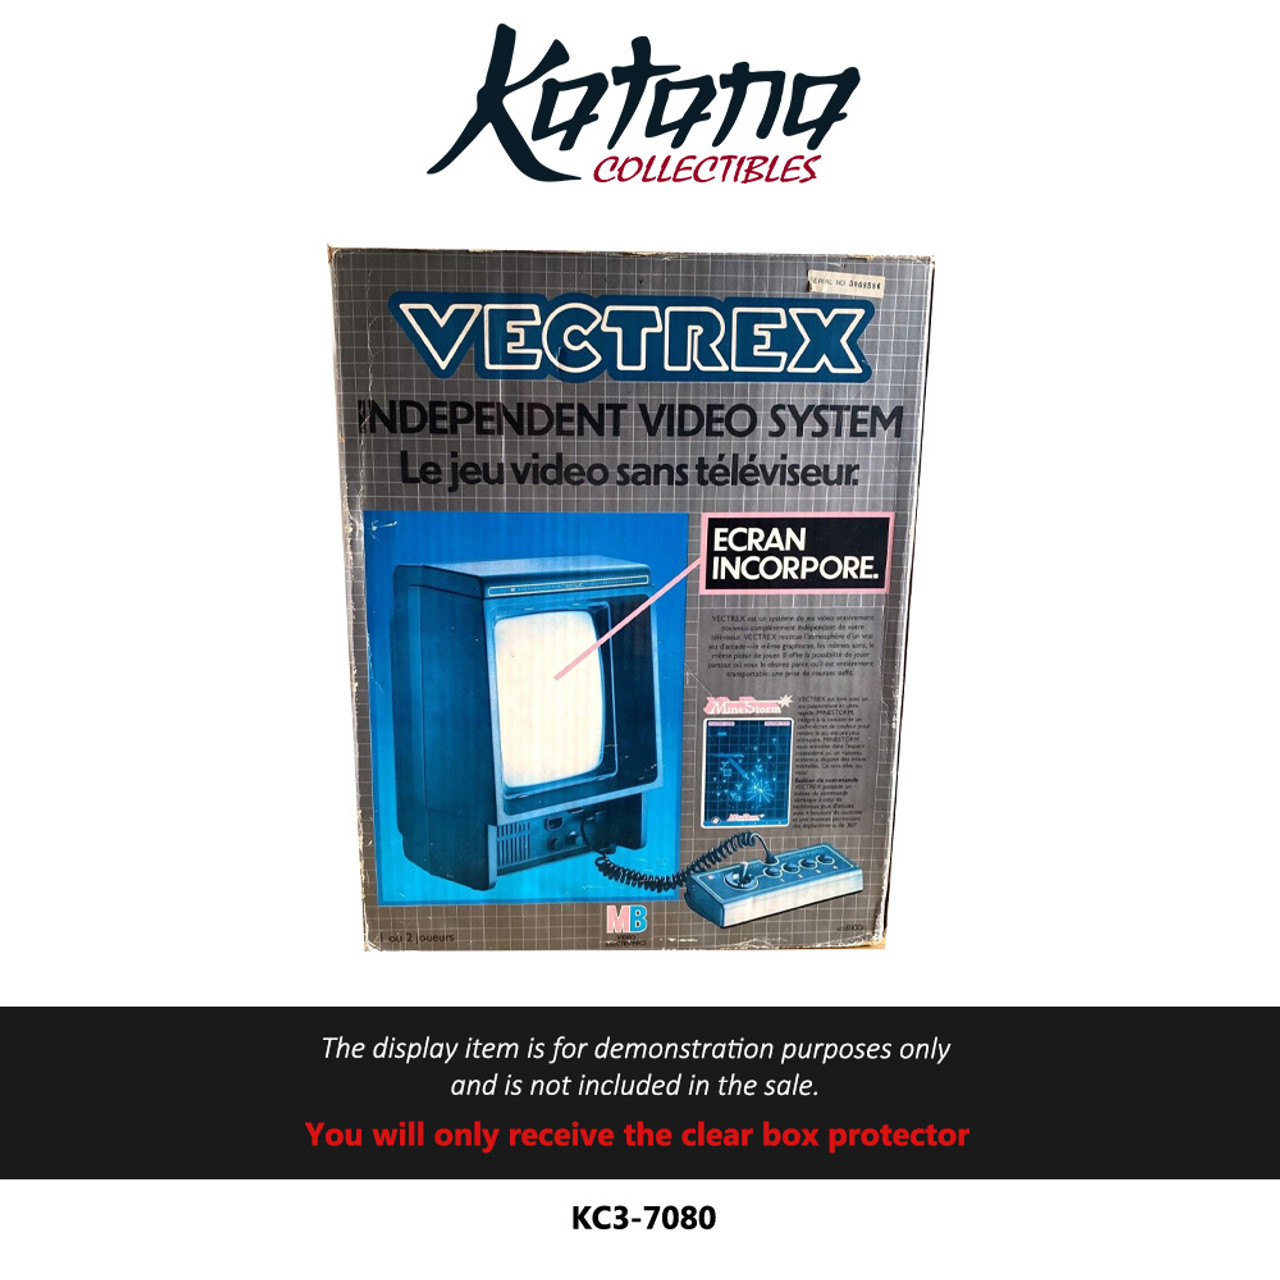 Katana Collectibles Protector For Vectrex Console Box European